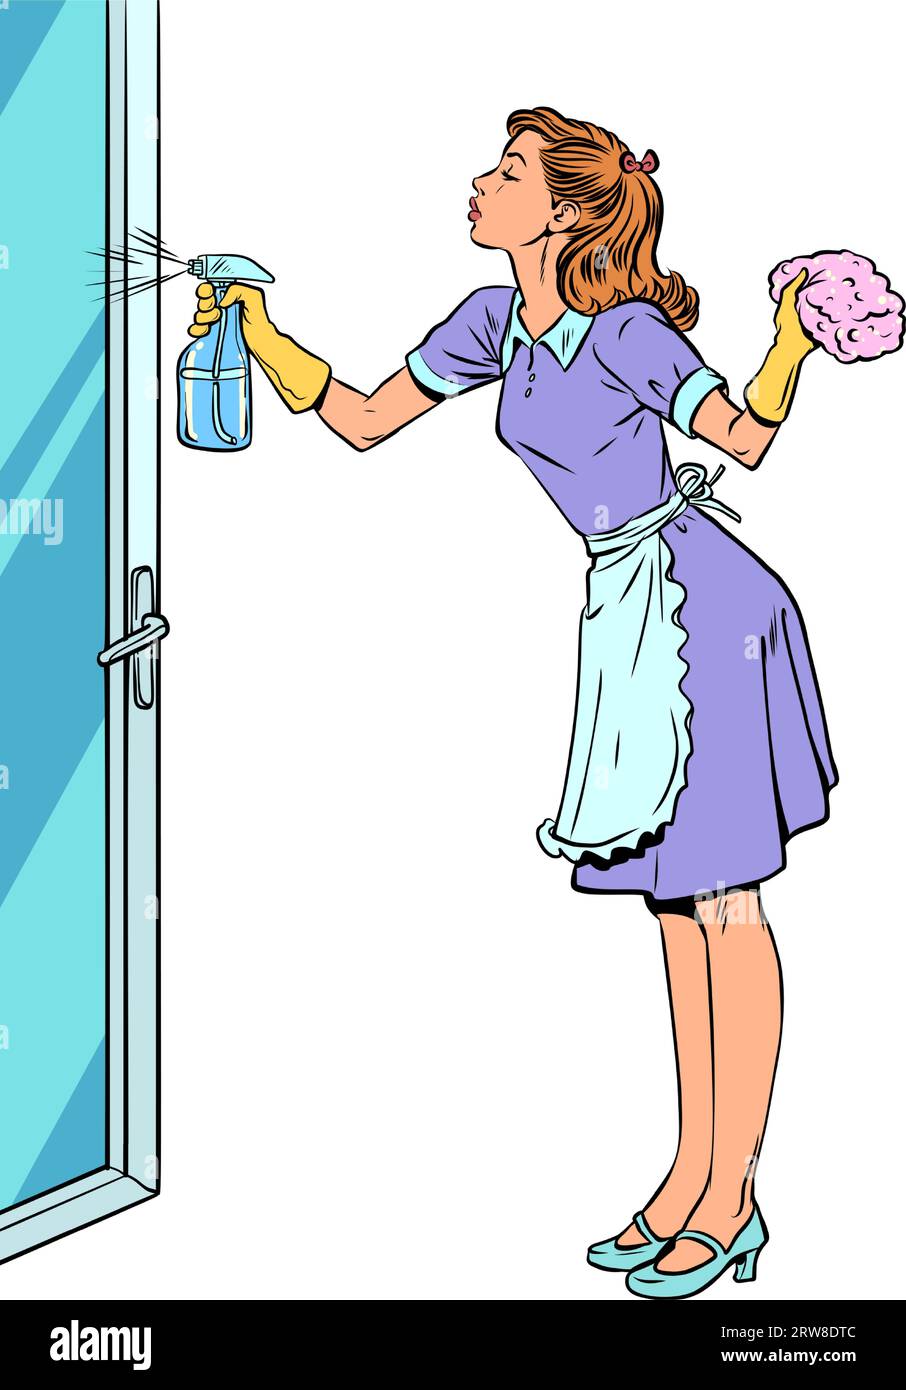 Service de nettoyage pour nettoyer votre maison. Femme au foyer responsable nettoie la maison. Une fille en uniforme lave une porte vitrée. Illustration de Vecteur